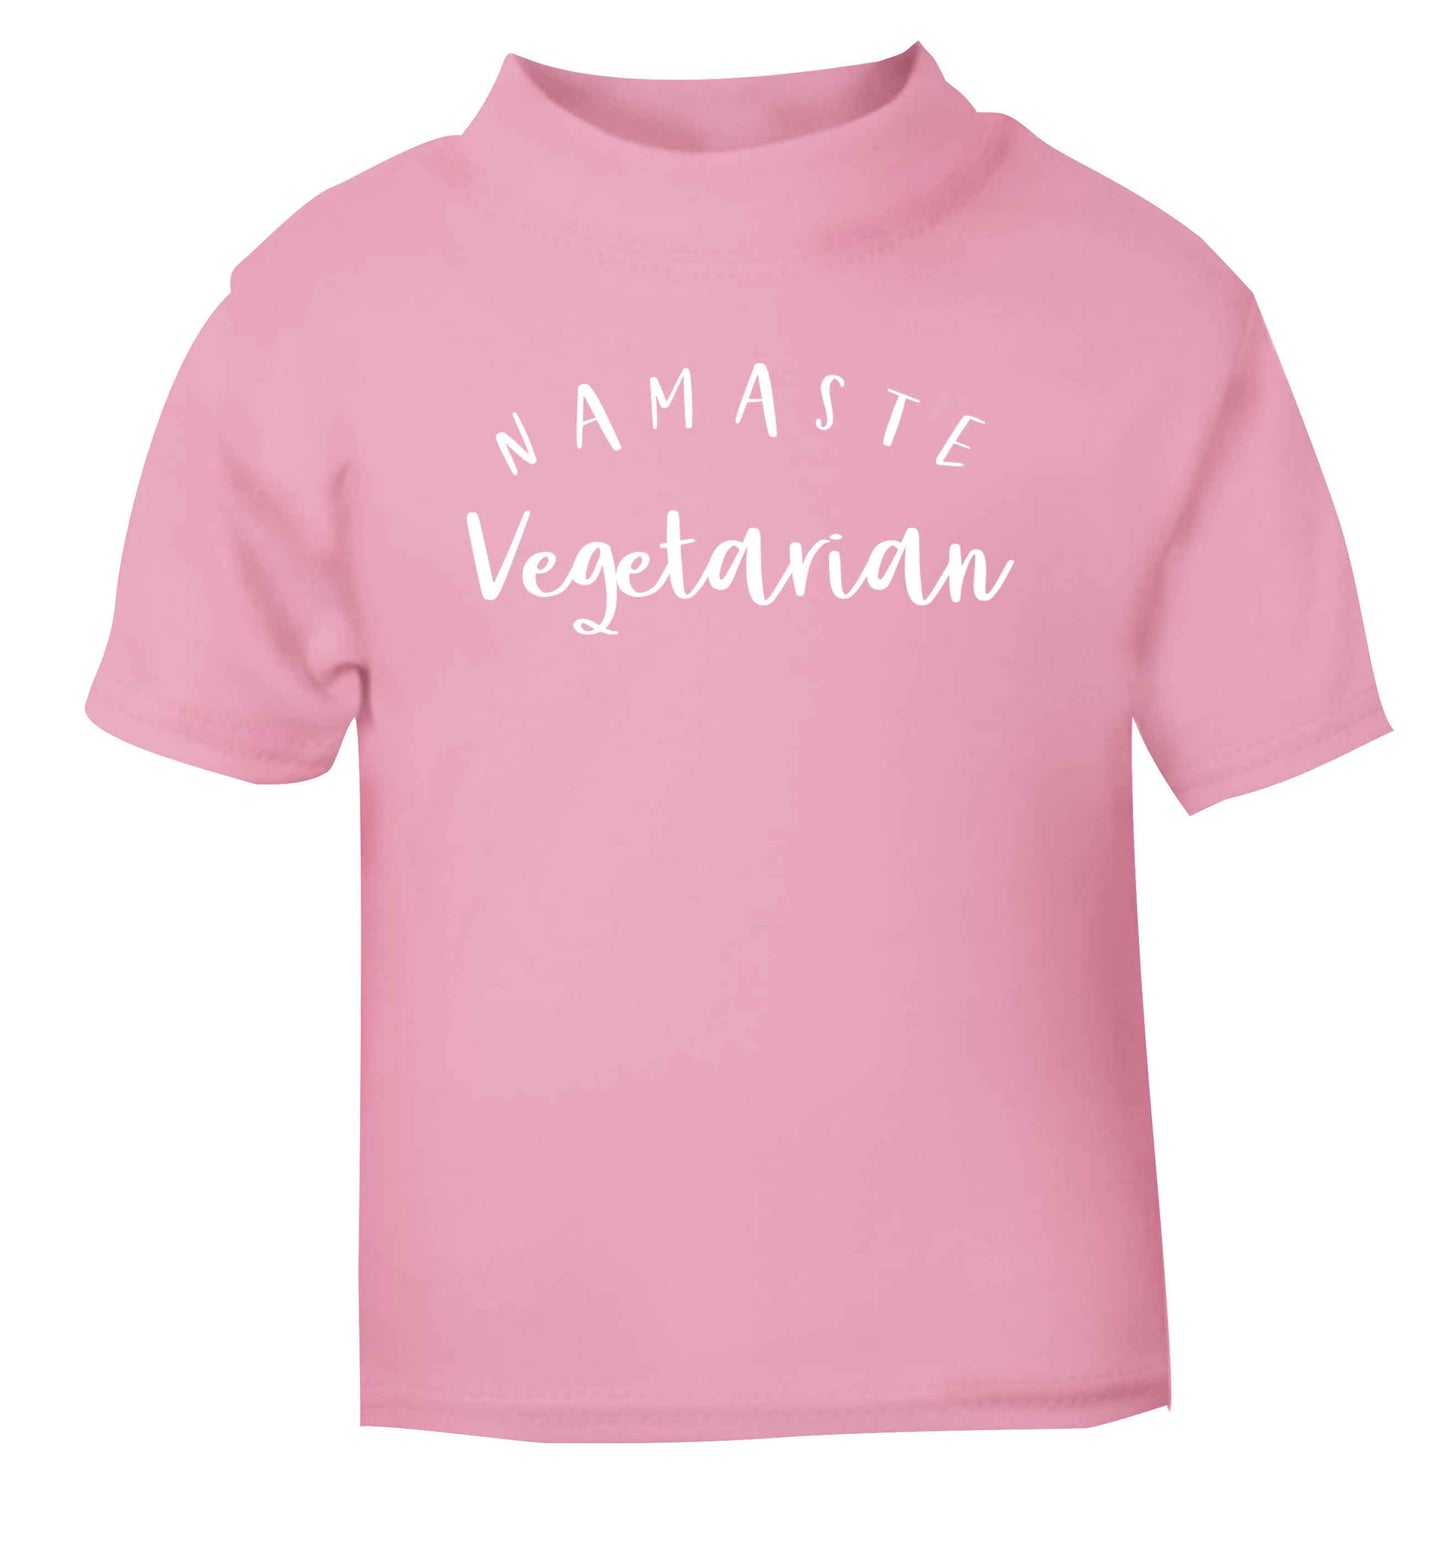 Namaste vegetarian light pink Baby Toddler Tshirt 2 Years